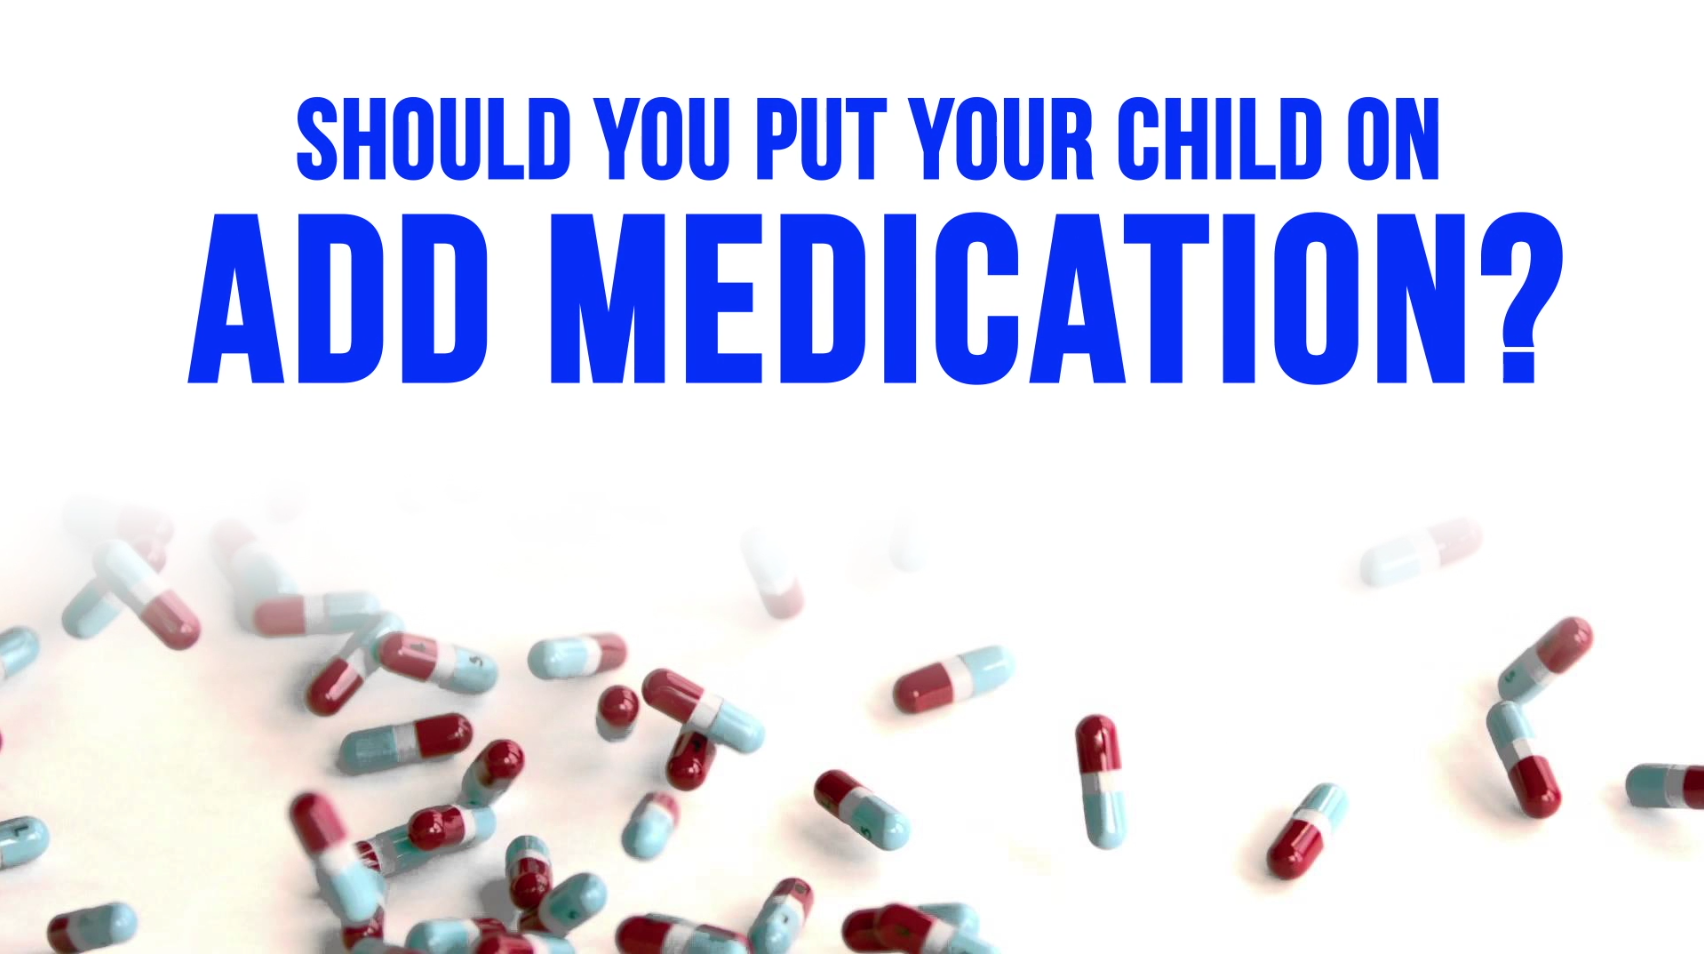 adhd medication alternatives for kids